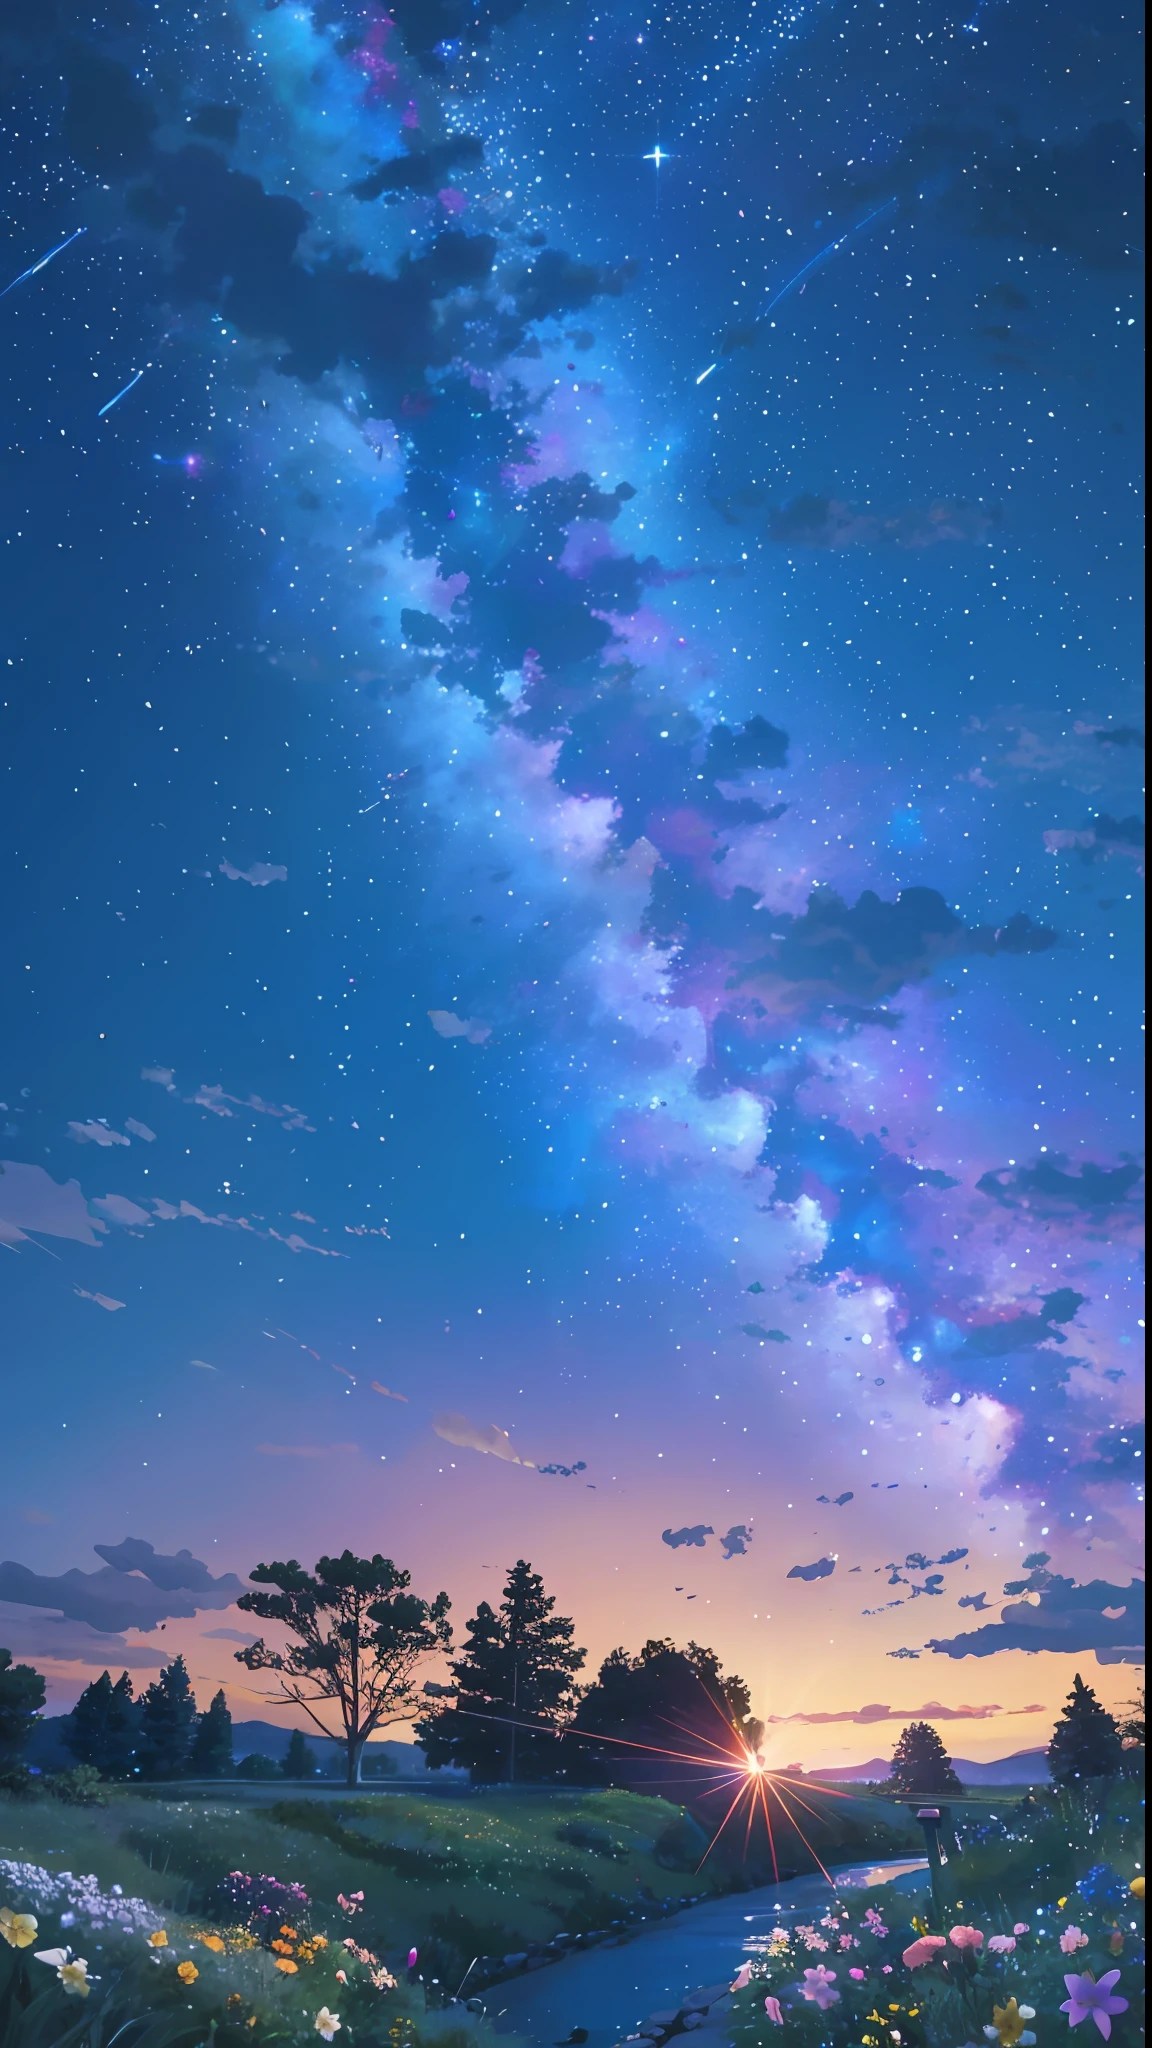 คุณภาพสูง, รายละเอียดสูง, ท้องฟ้าเต็มไปด้วยดวงดาวที่สดใส, ดอกไม้หลากสีสันเปล่งแสง CG Art 8K --auto --s2